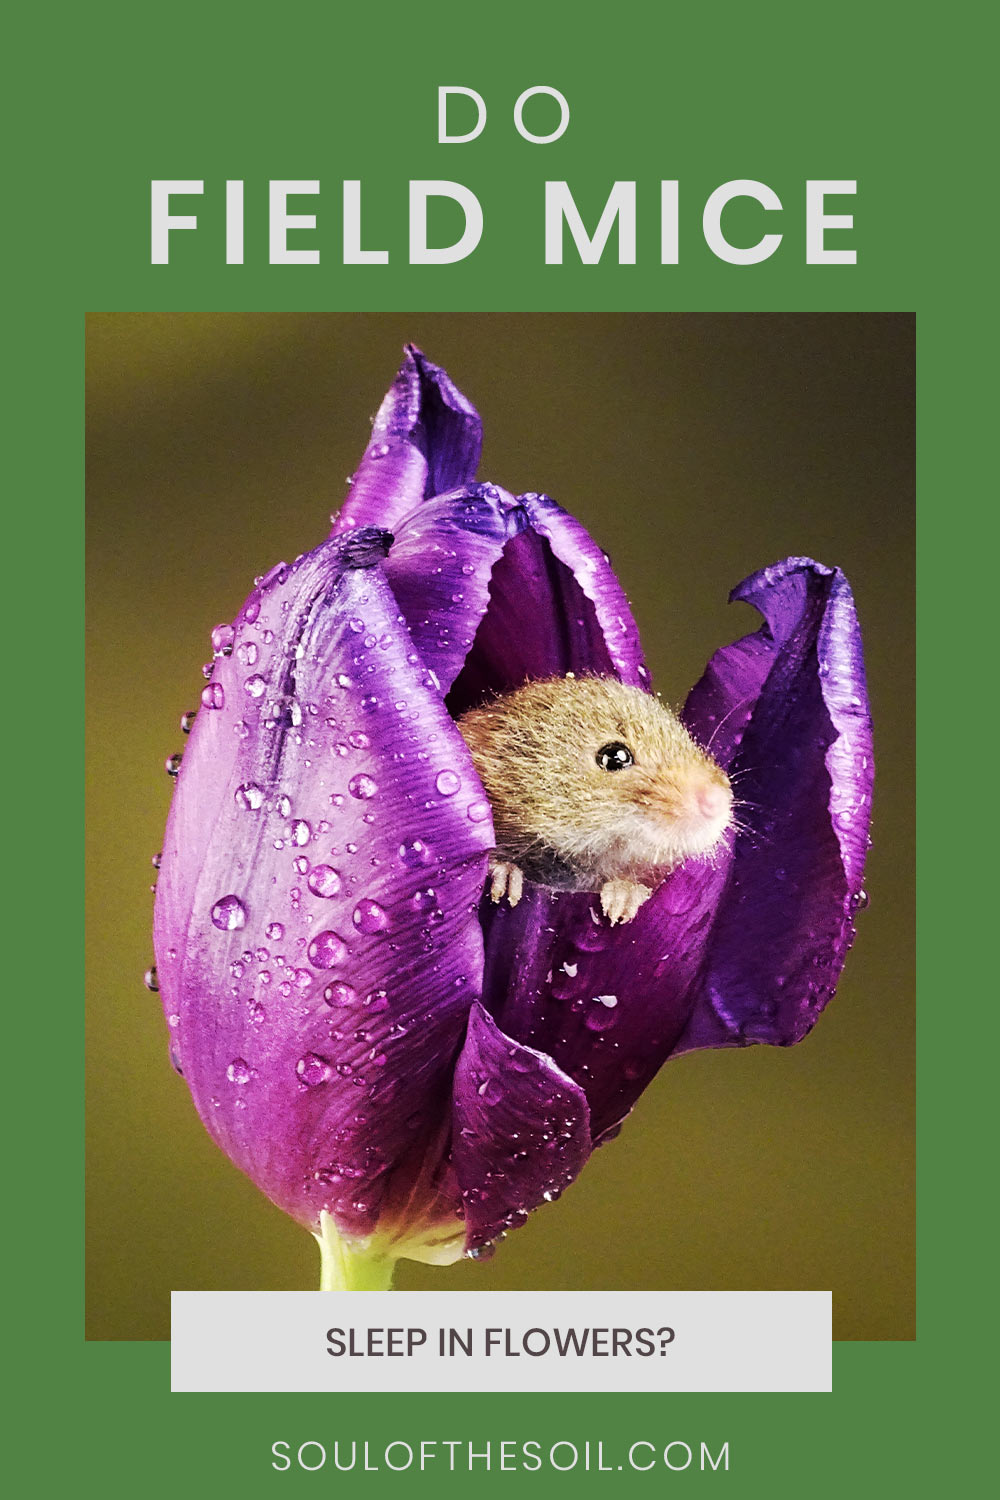 Do Field Mice Sleep in Flowers?